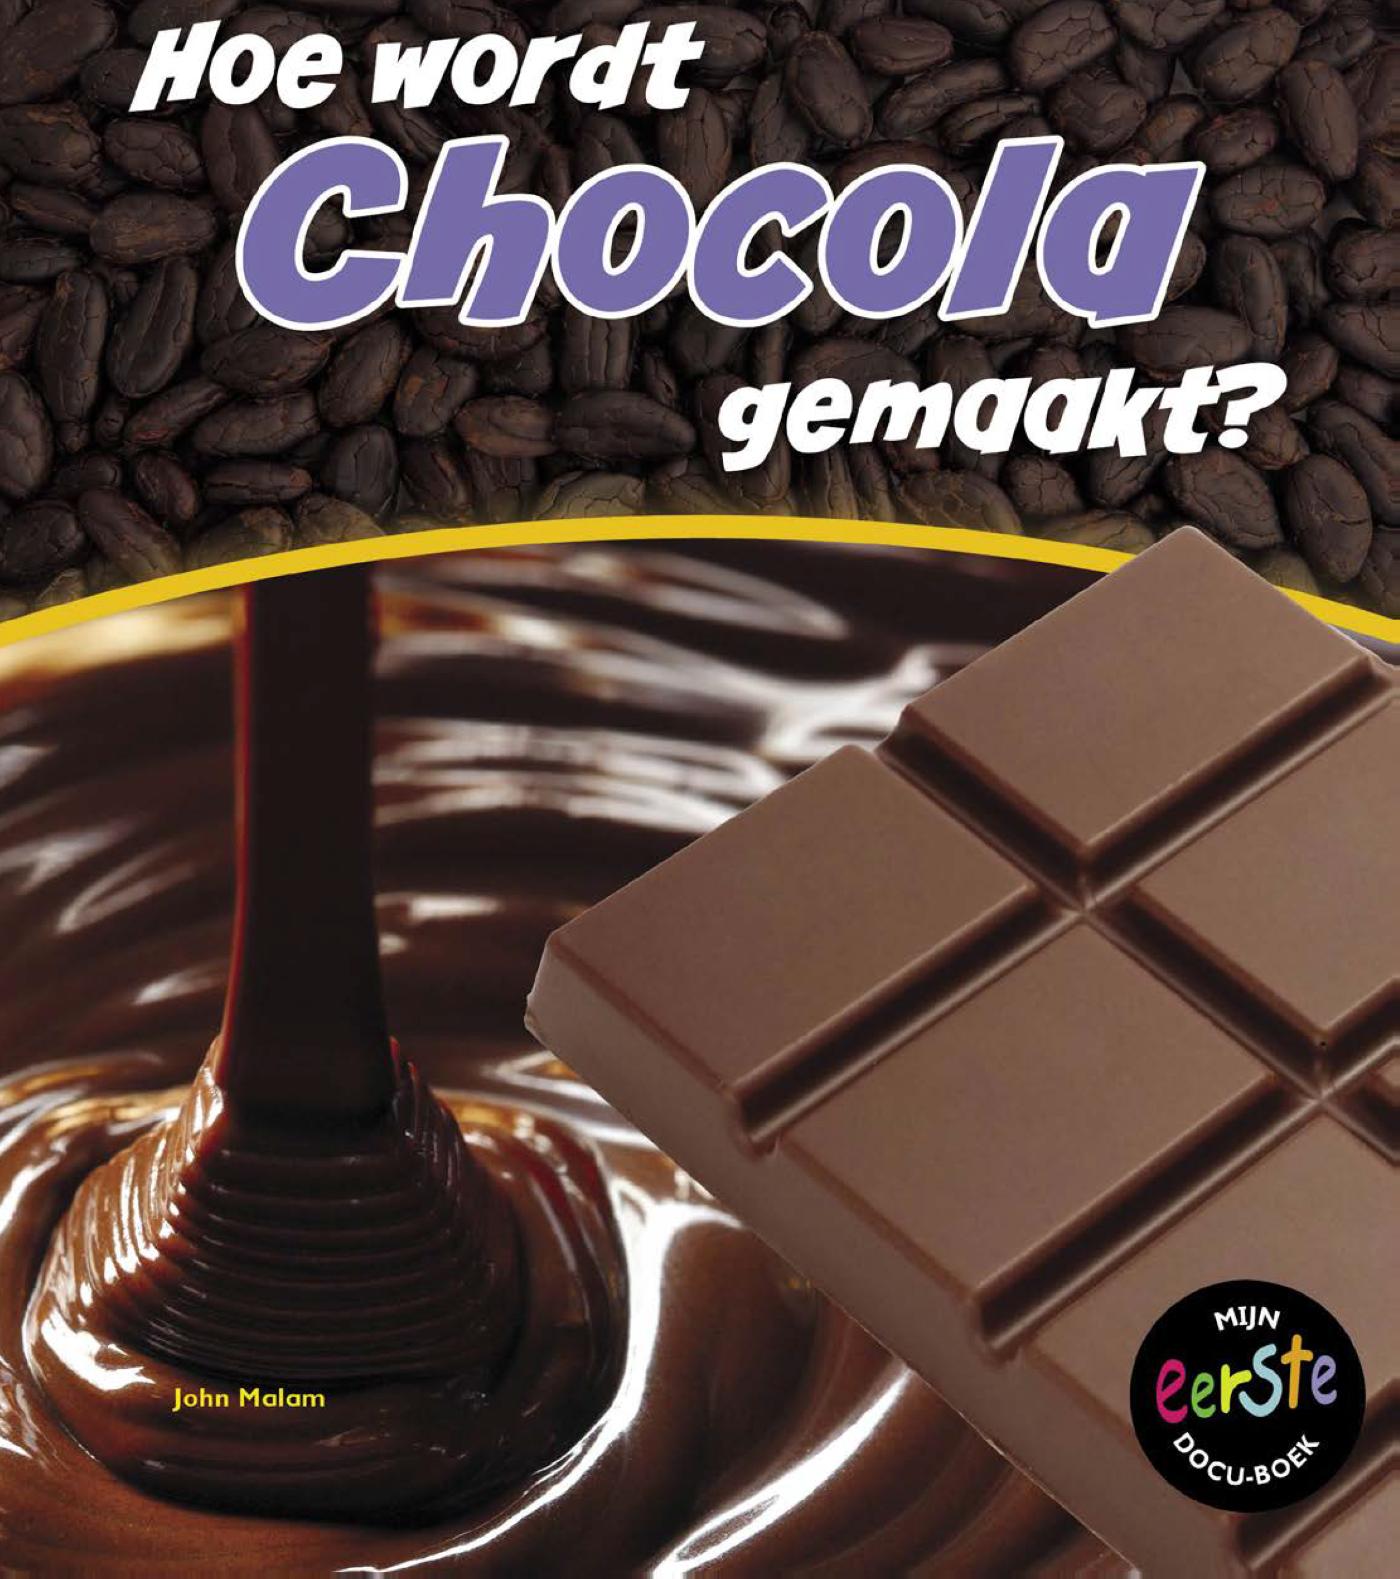 Hoe wordt chocolade gemaakt?